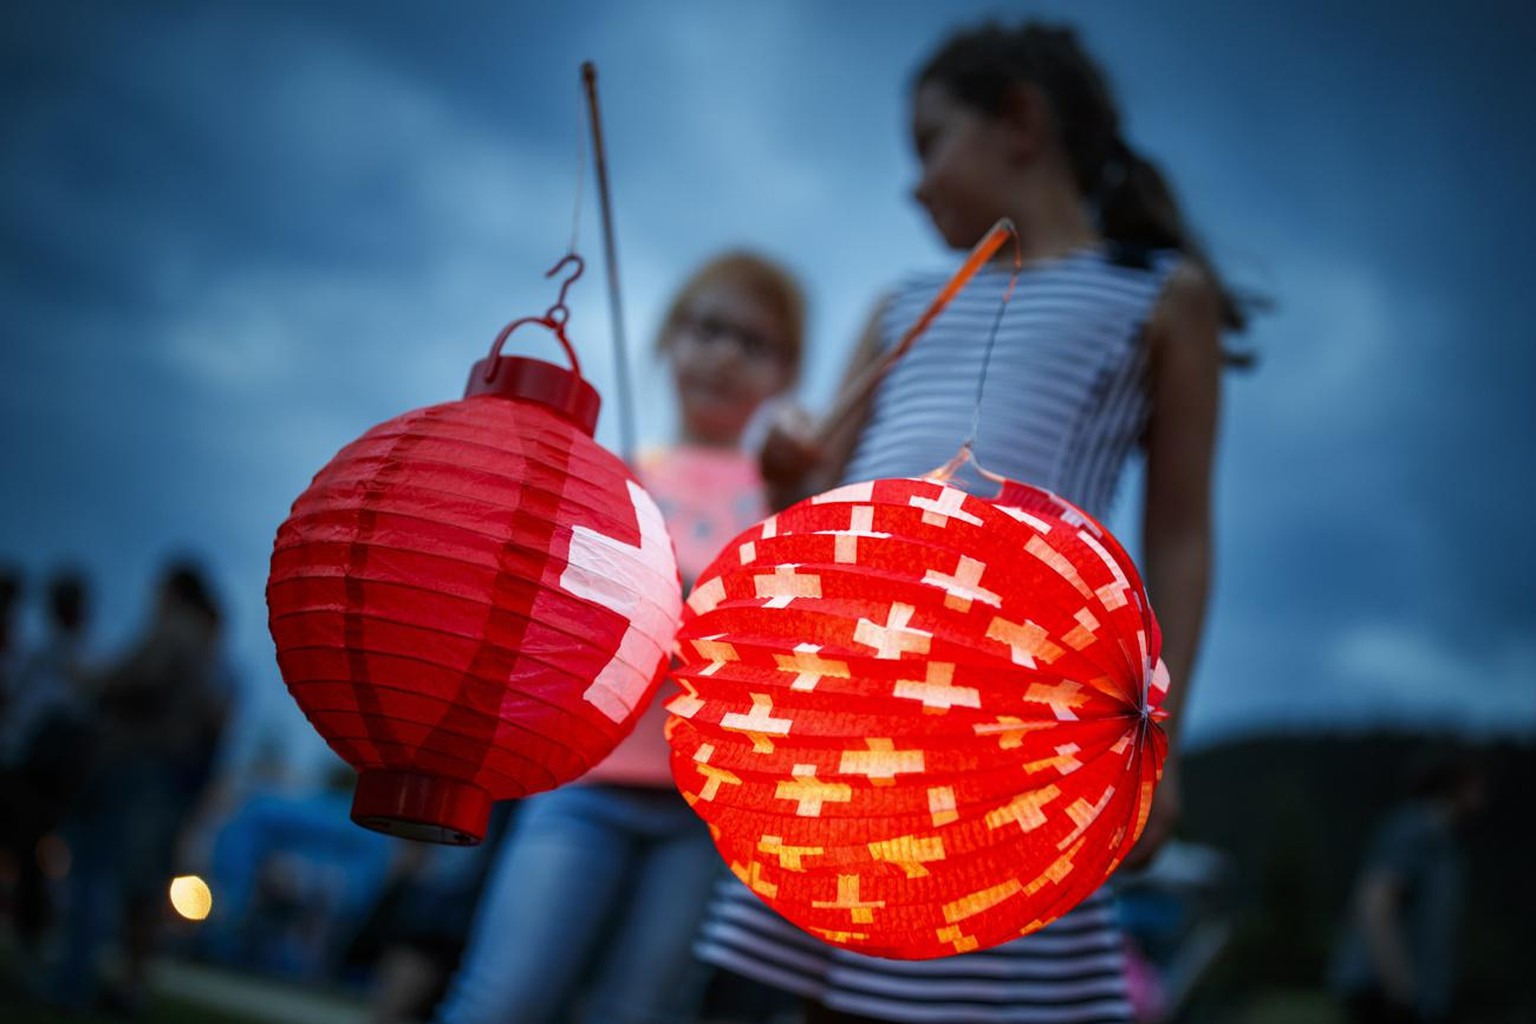 Des enfants jouent avec des lampions decores de la croix suisse lors de la fete nationale du Val-de-Travers ce lundi 31 juillet 2017 a Motiers. (KEYSTONE/Valentin Flauraud)